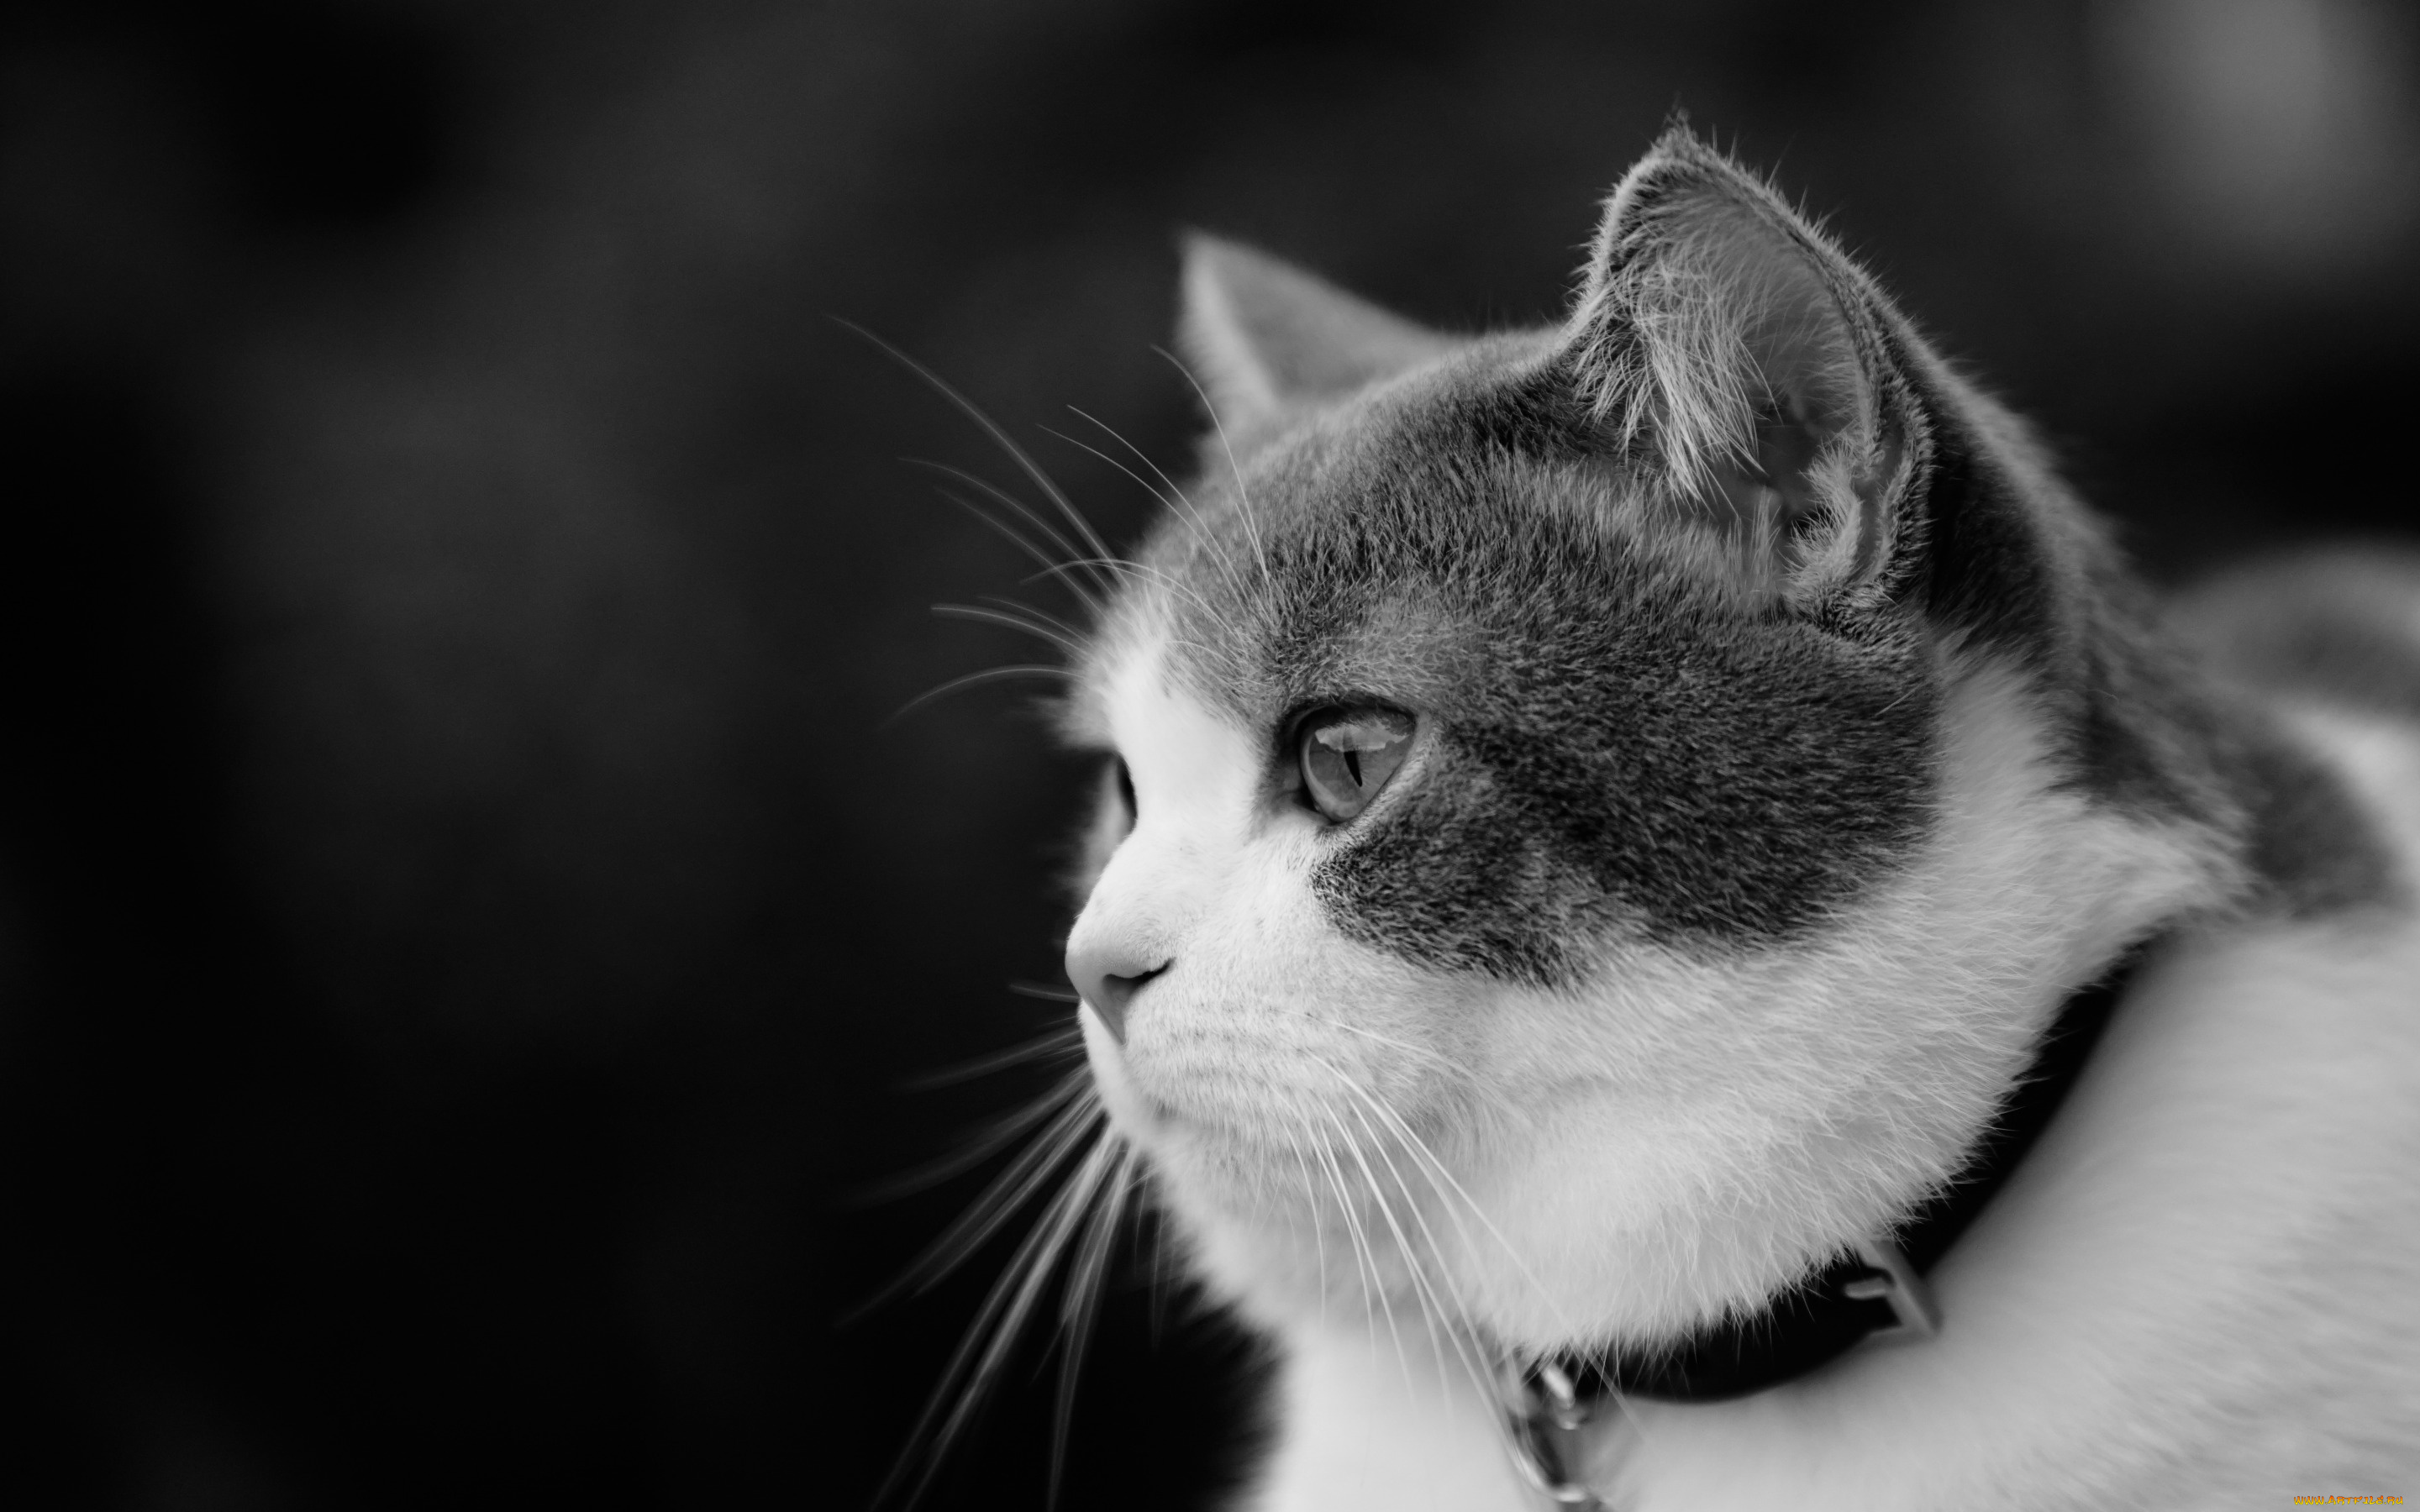 животные, коты, котейка, чёрно-белая, портрет, взгляд, кошка, ошейник, профиль, монохром, мордочка